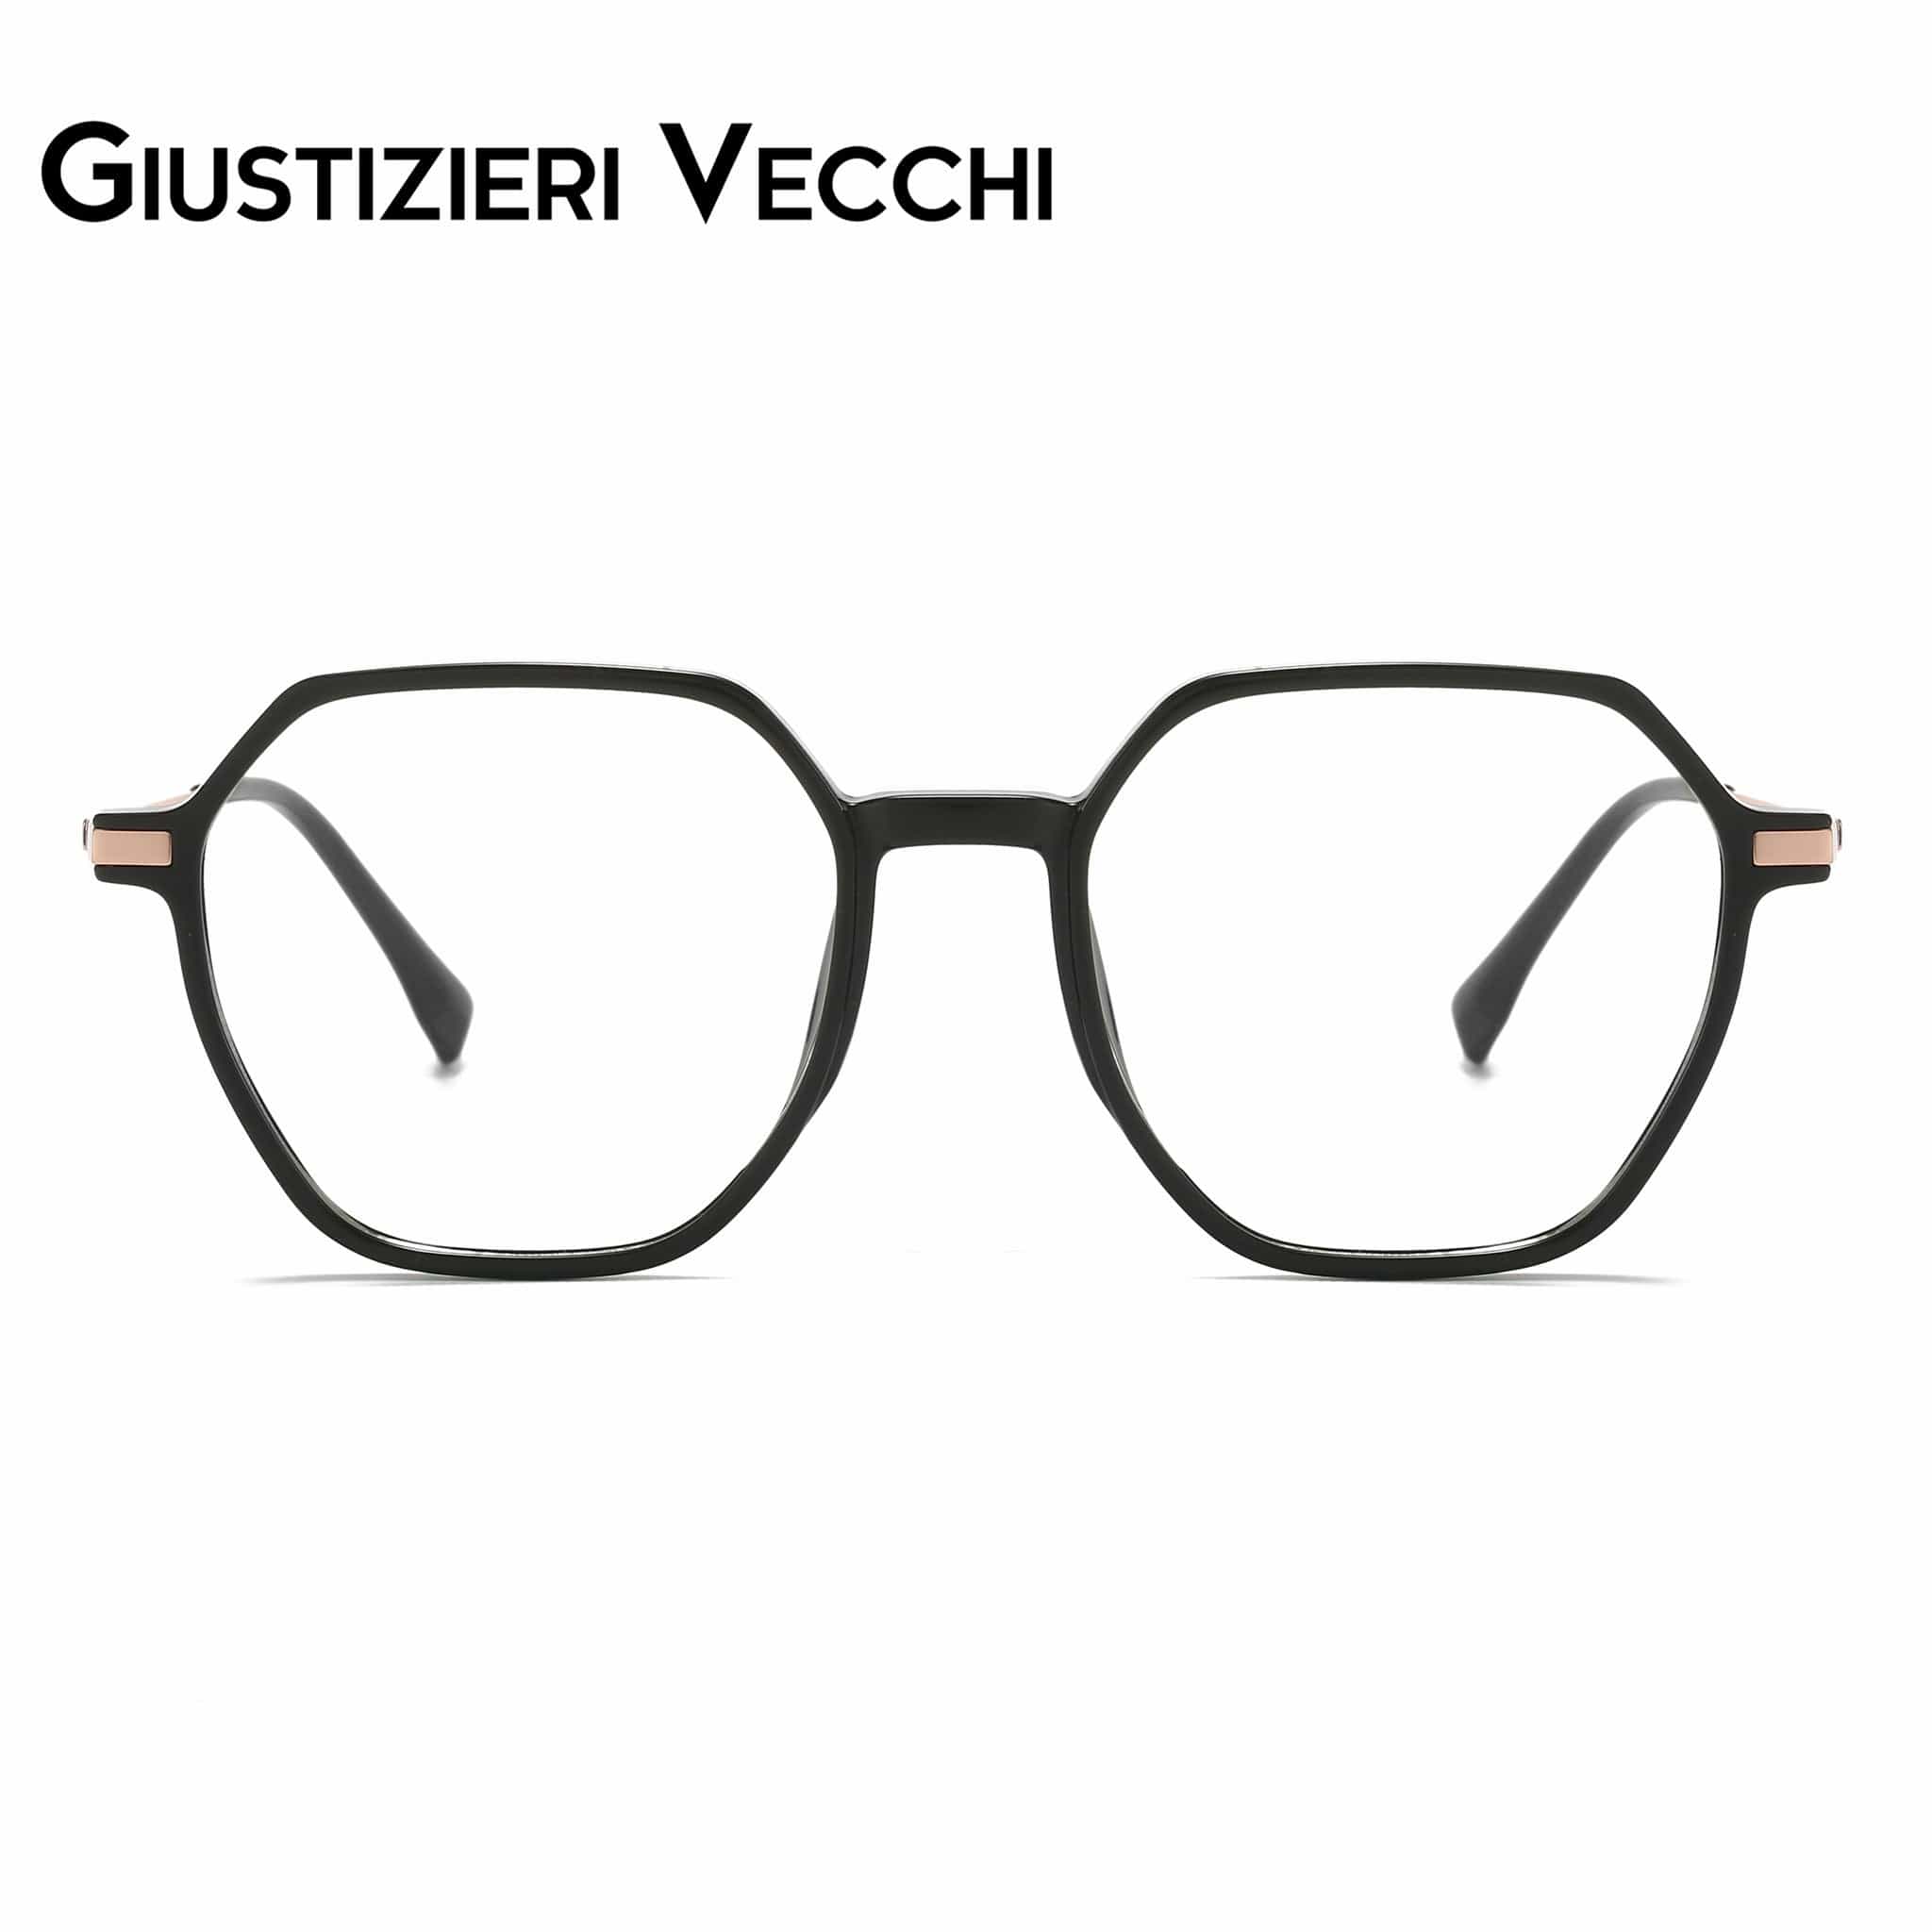 GIUSTIZIERI VECCHI Eyeglasses Medium / Black with Rose Gold IceRider Duo